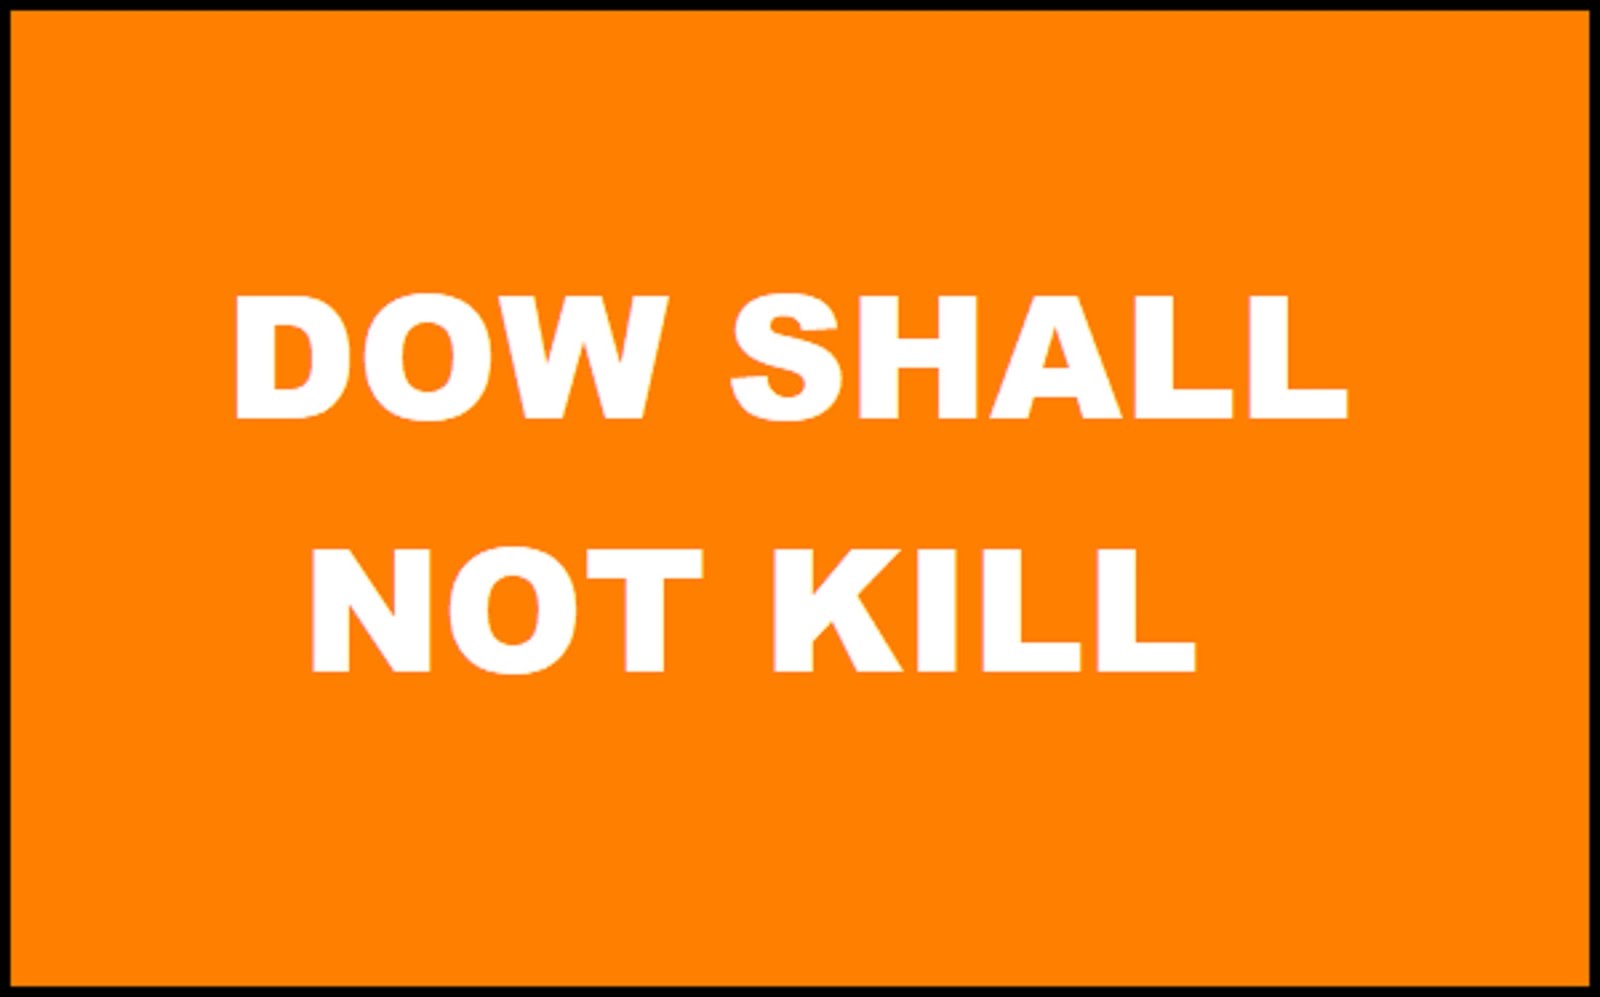 DOW SHALL NOT KILL